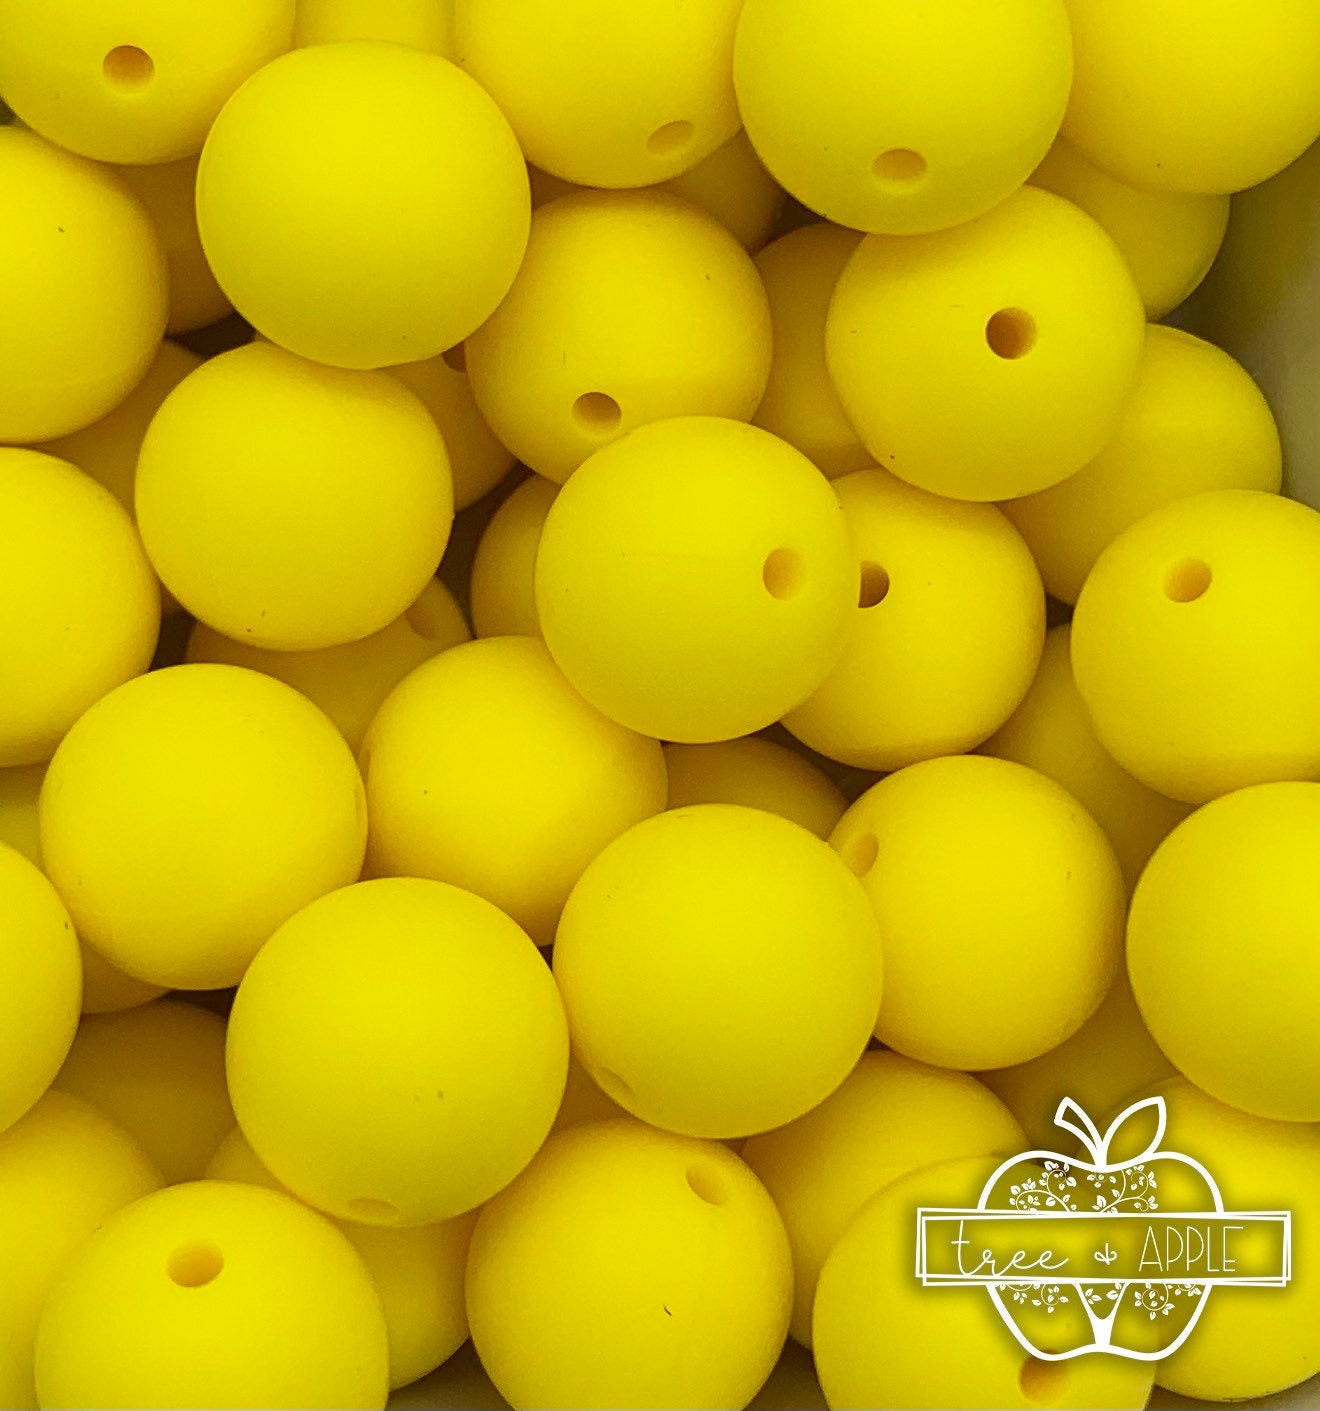 15mm Sunshine Yellow Round Silicone Beads, Yellow Round Silicone